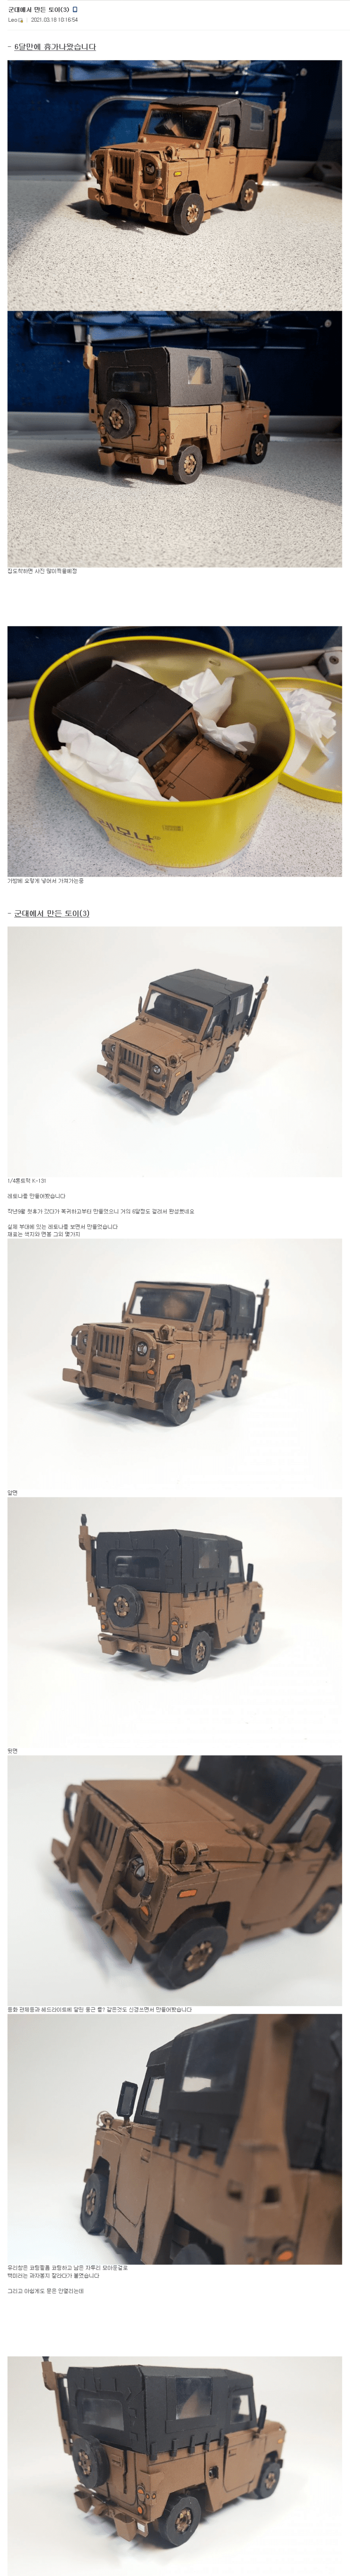 군대에서 만든 레토나 장난감 - 꾸르